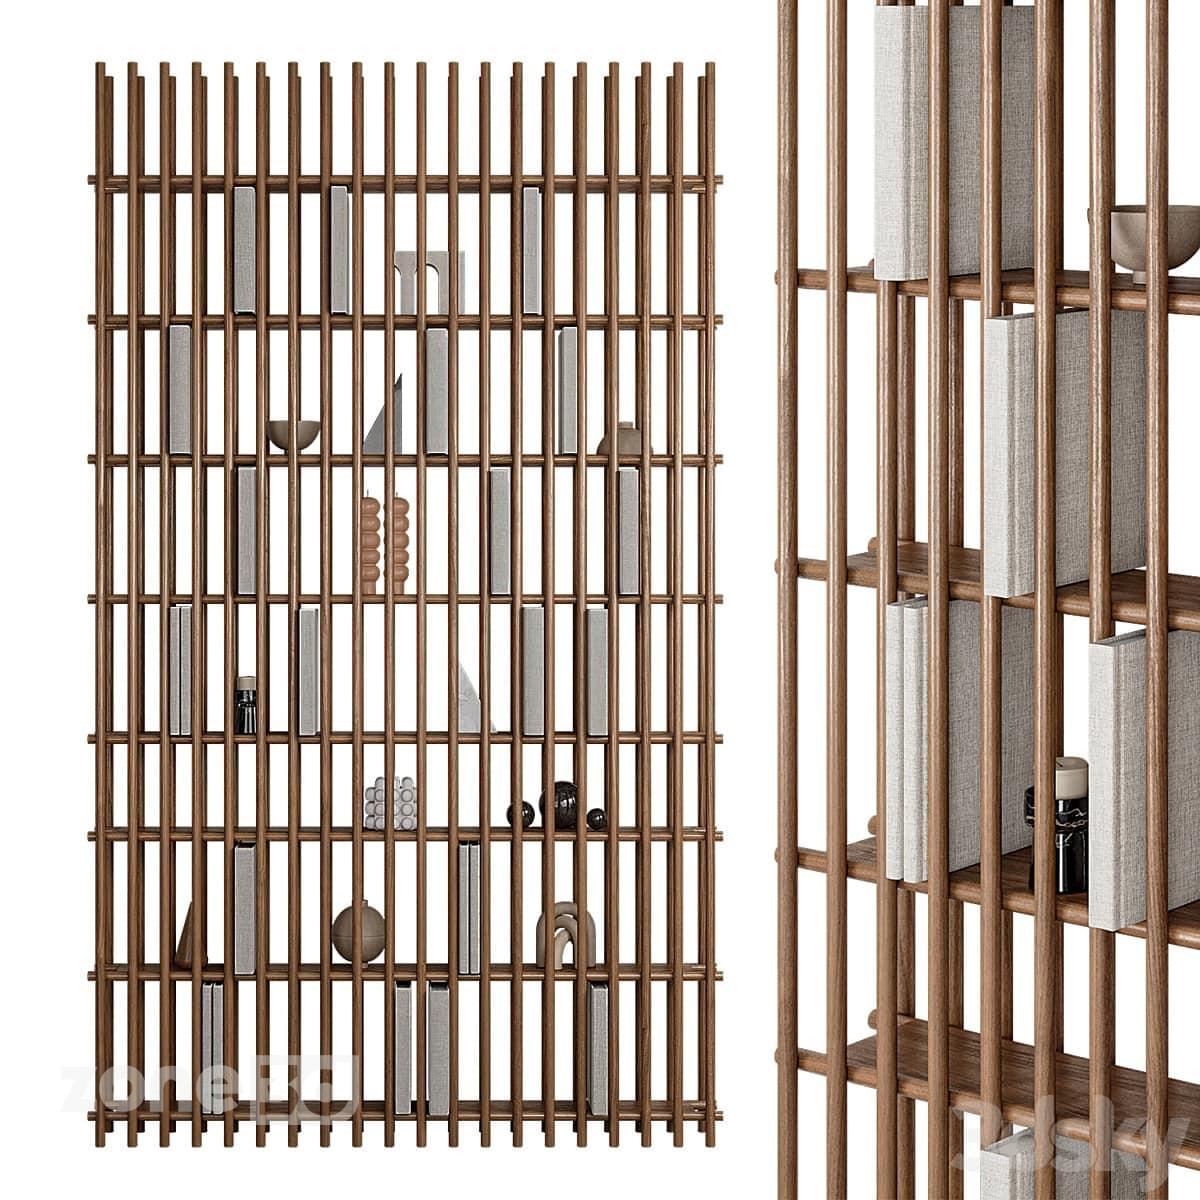 آبجکت شلف مدرن هفت طبقه چوبی به همراه لوازم دکوری